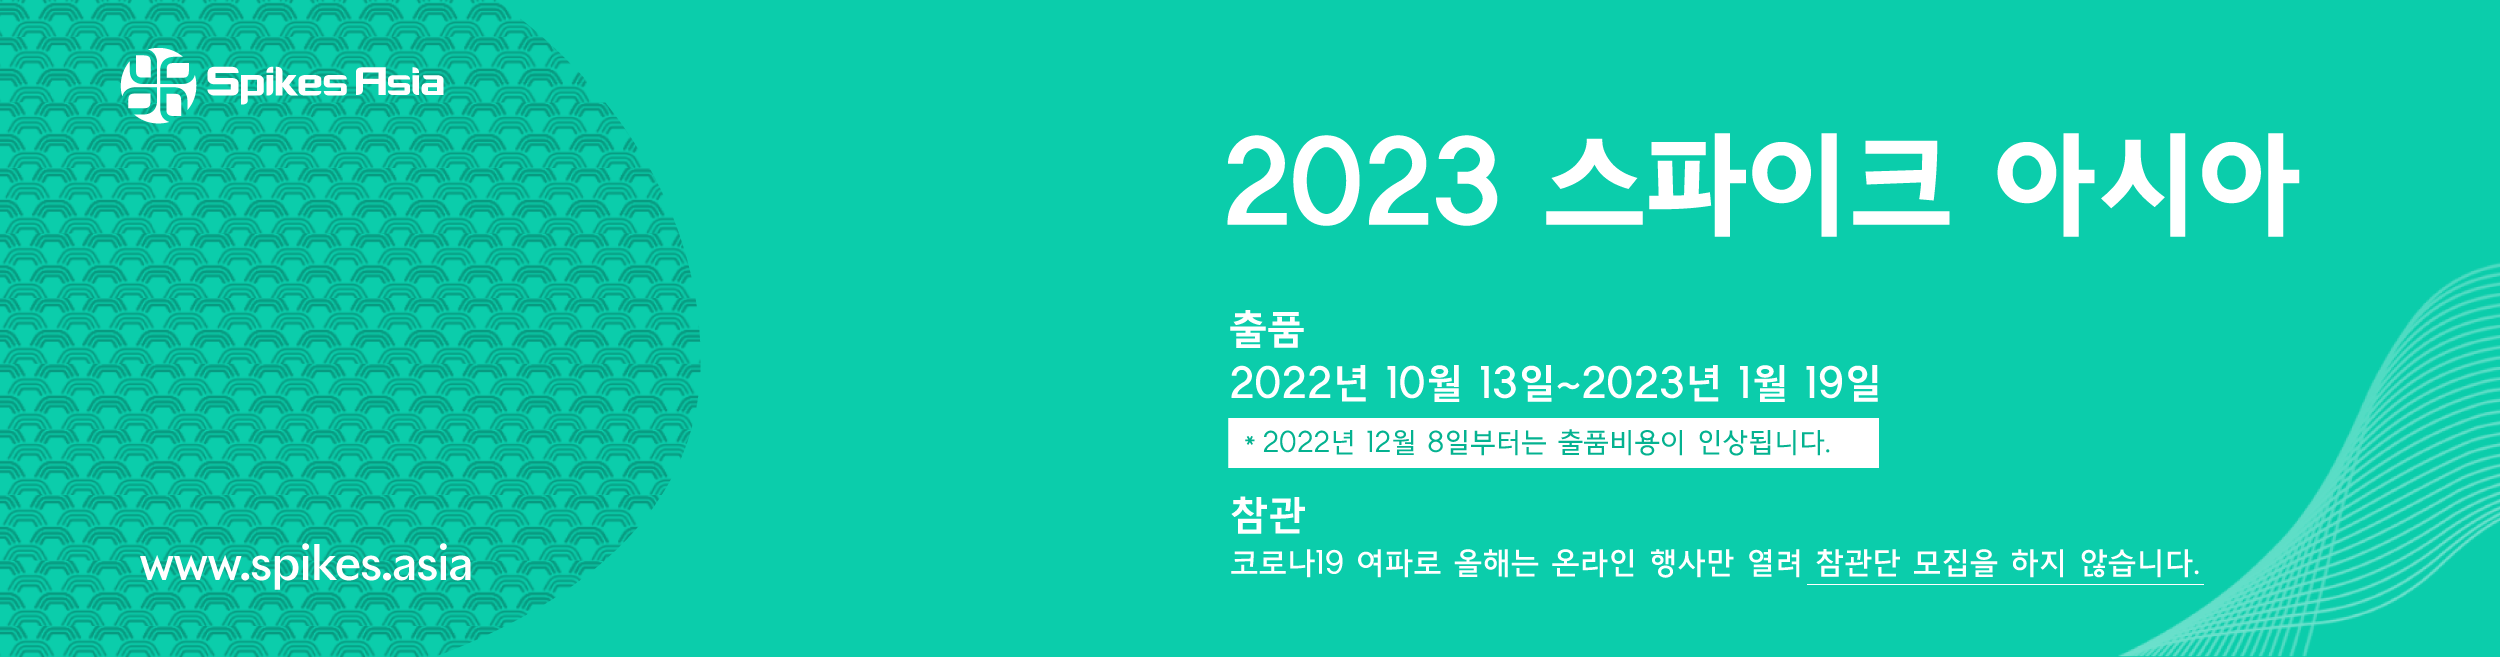 2023 스파이크 아시아